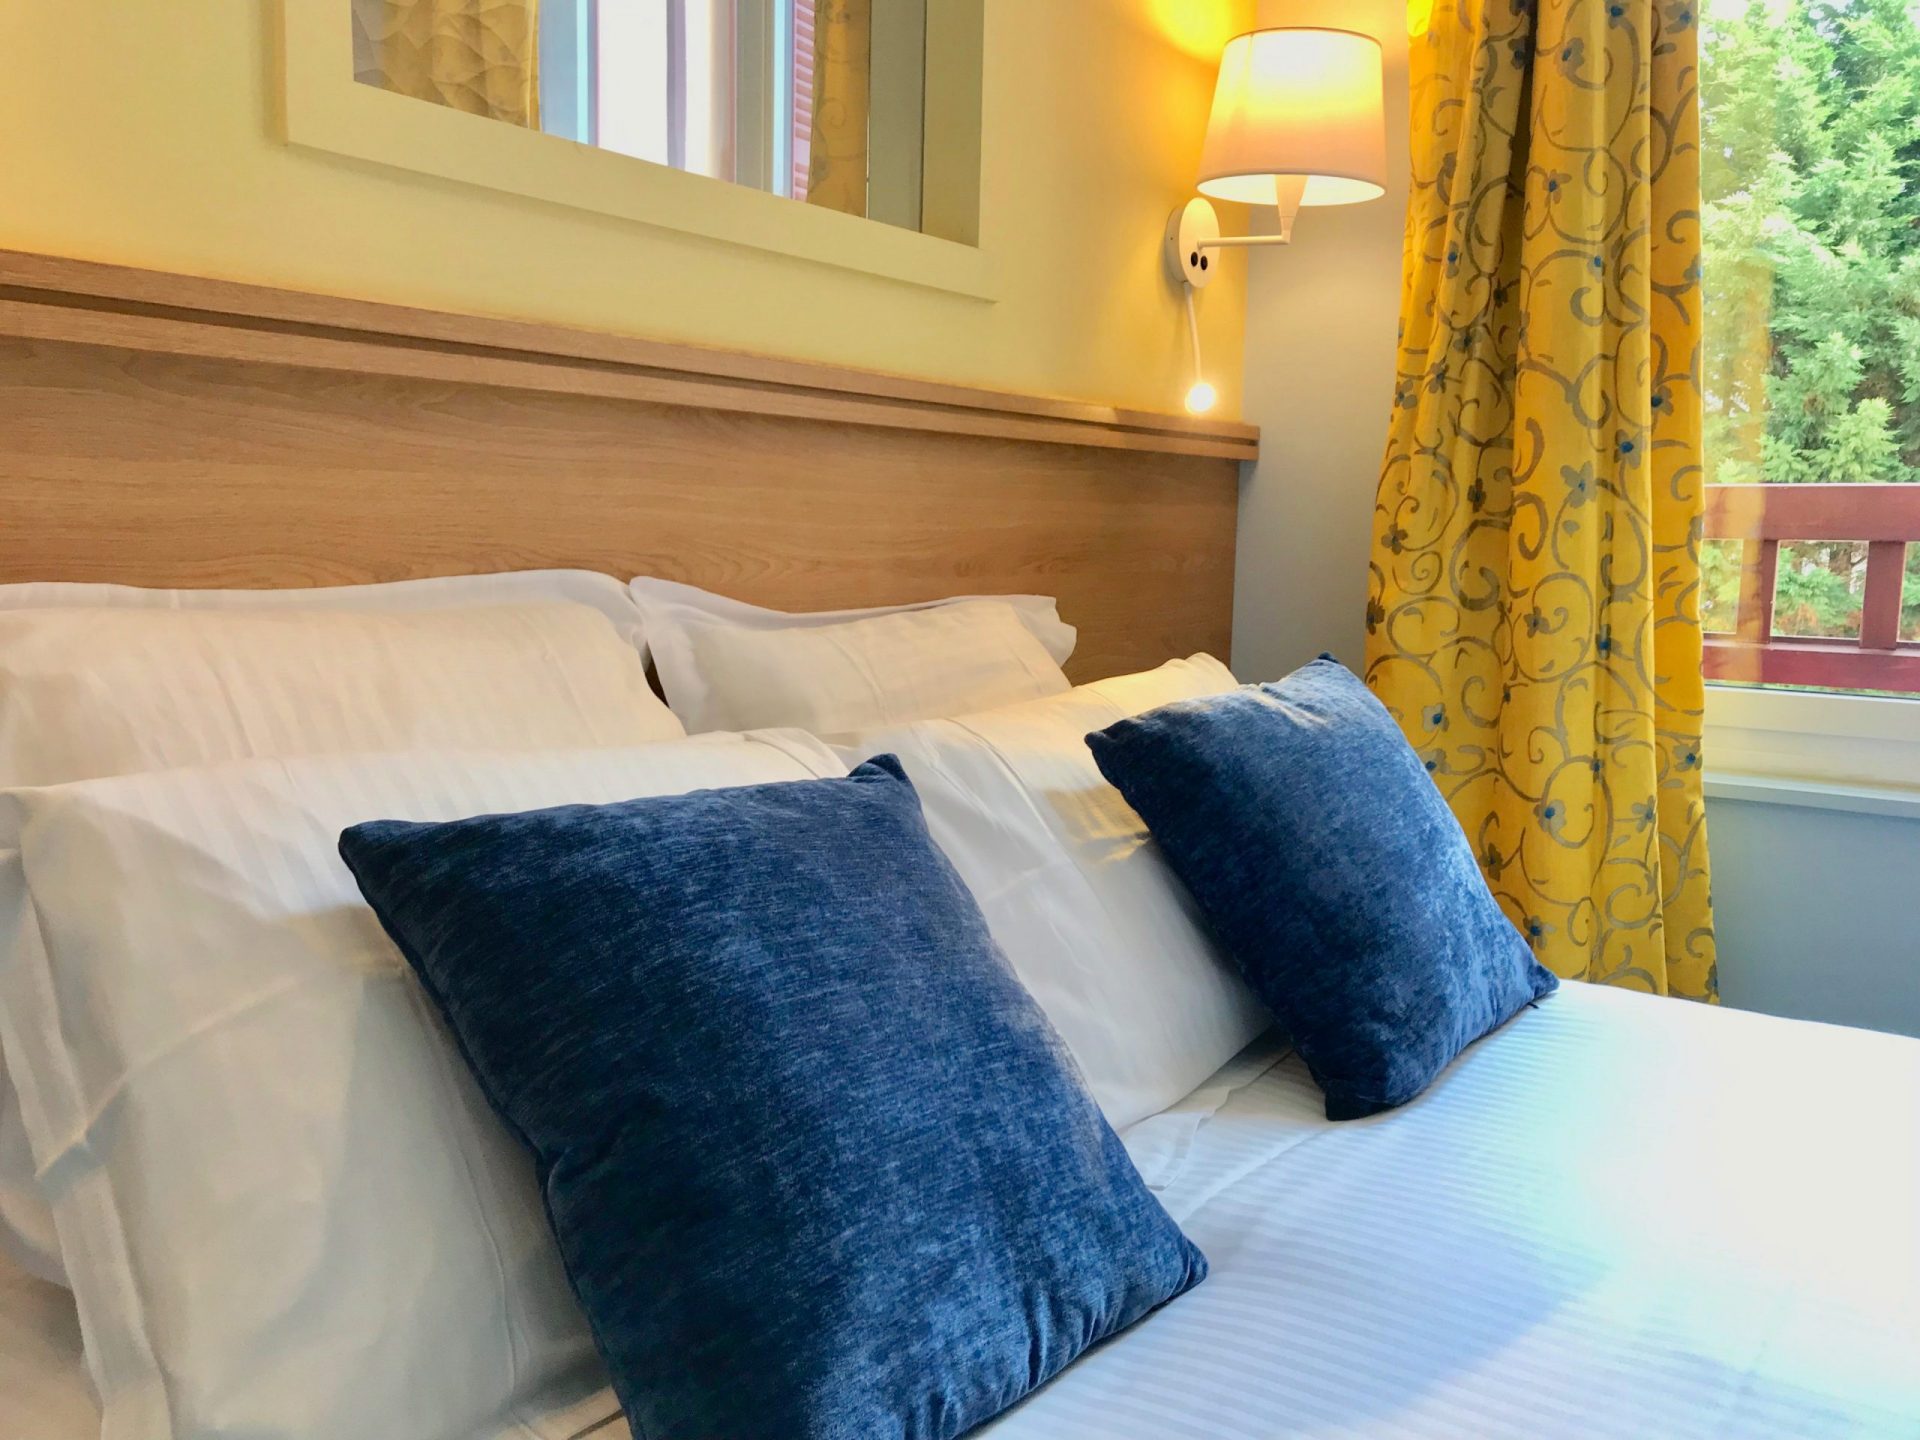 Bed and breakfast affaires : Soirée étape à l'Hotel Outre-Mer (Villa Le Couchant)